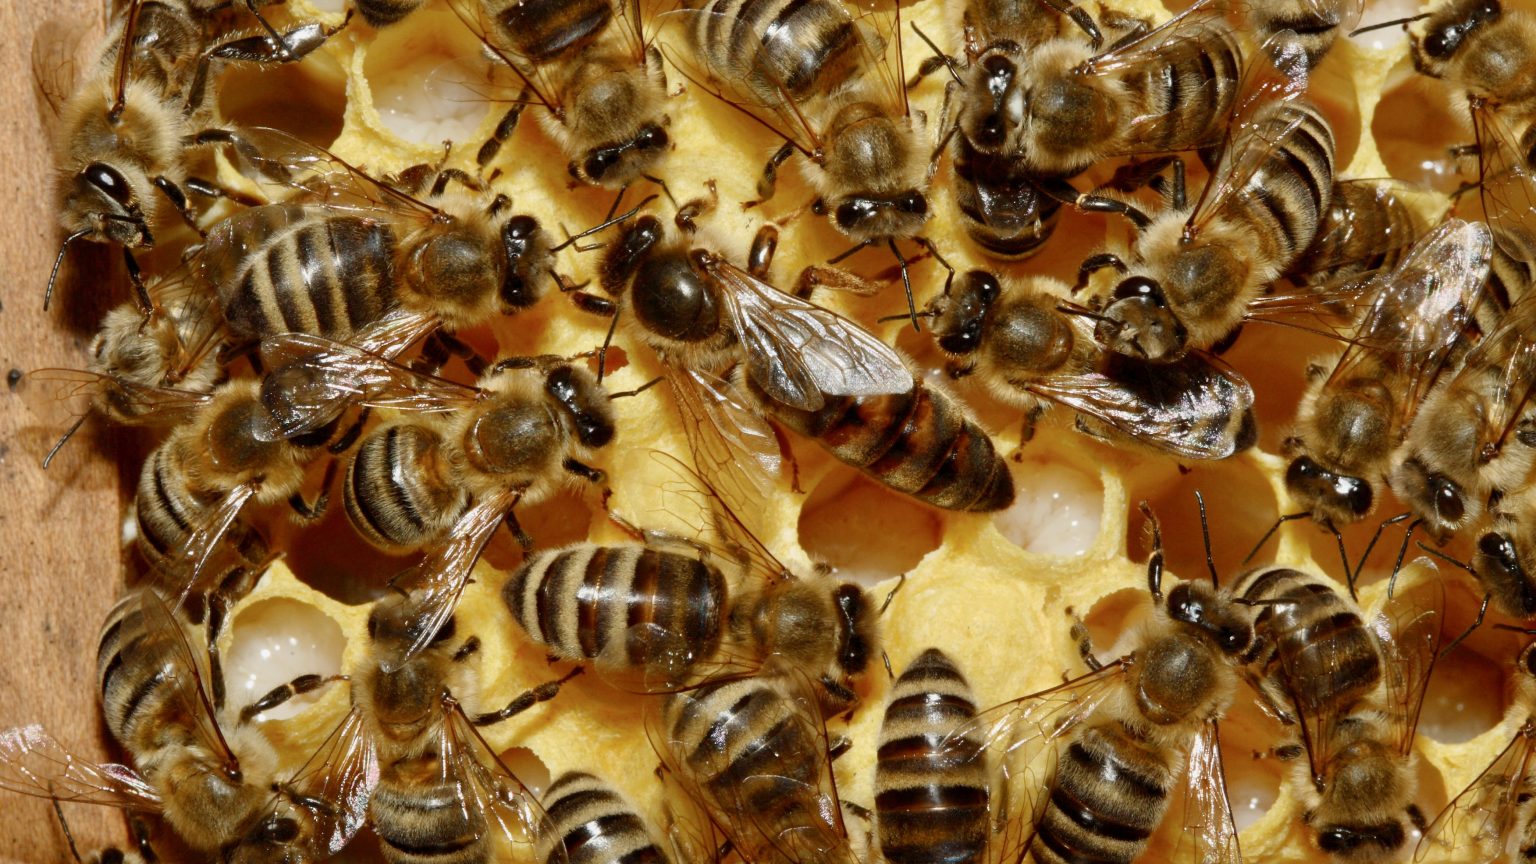 queen bee in center of workers